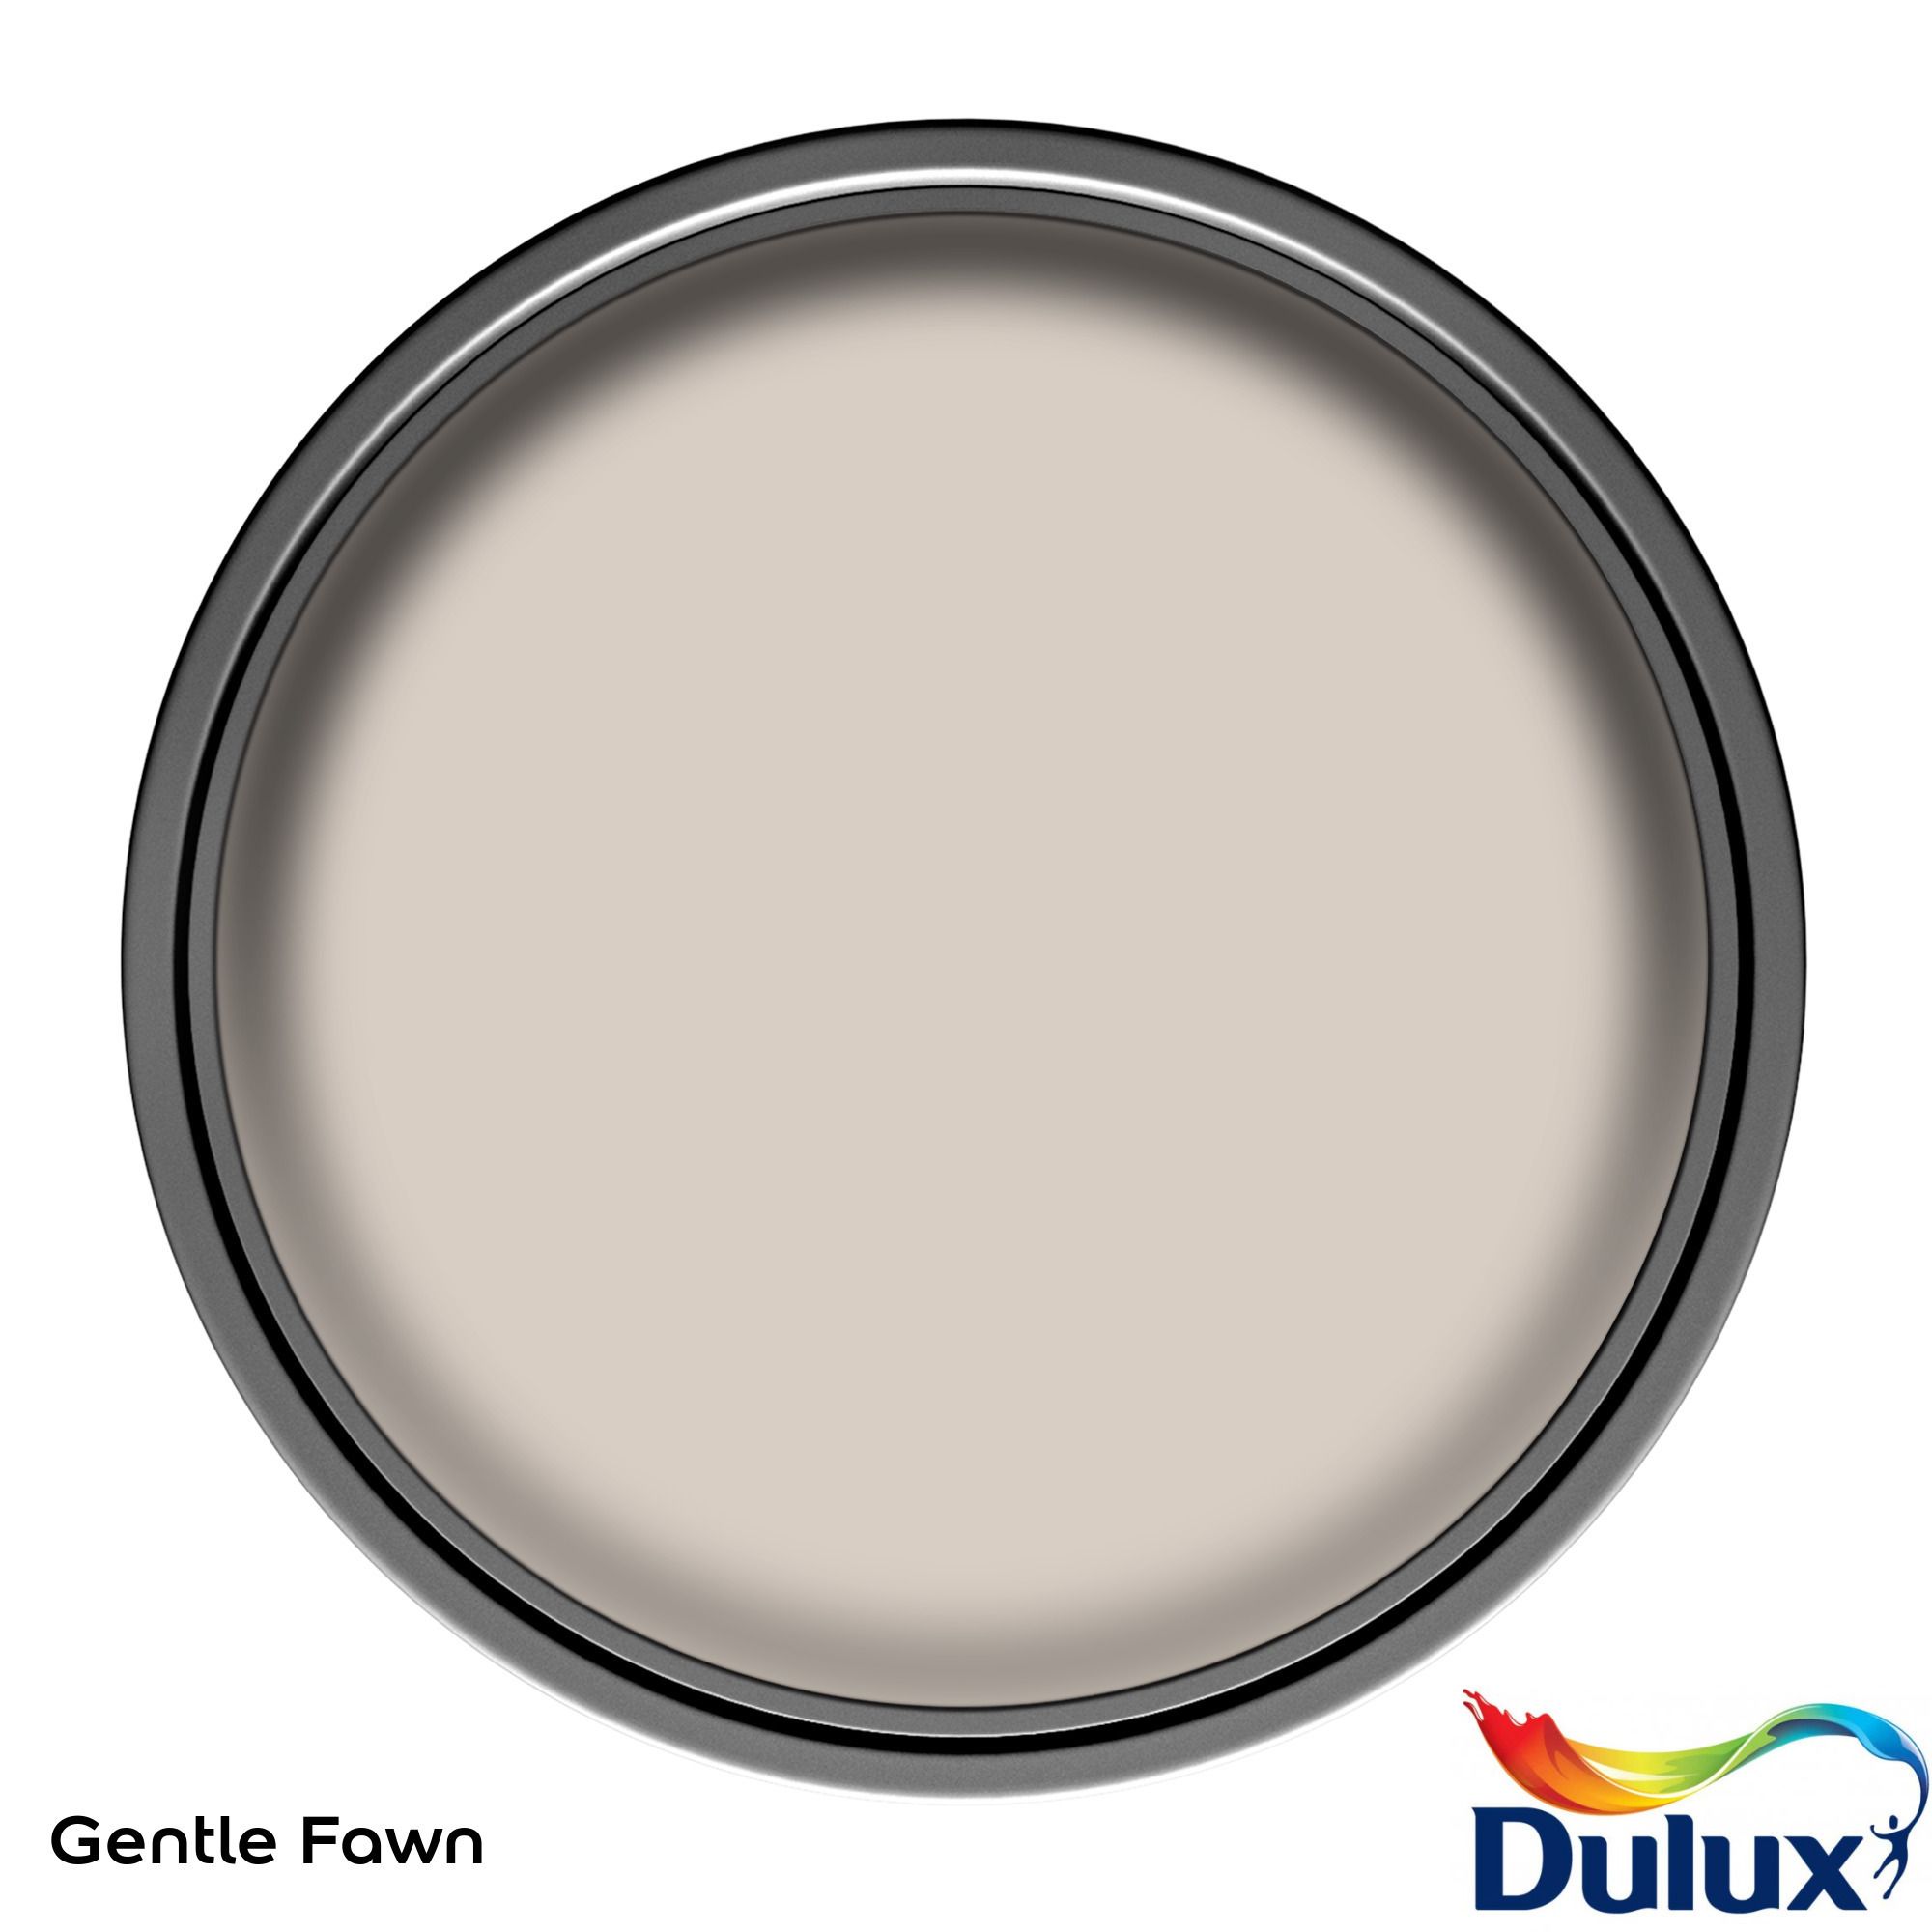 Dulux One coat Gentle fawn Matt Emulsion paint, 2.5L